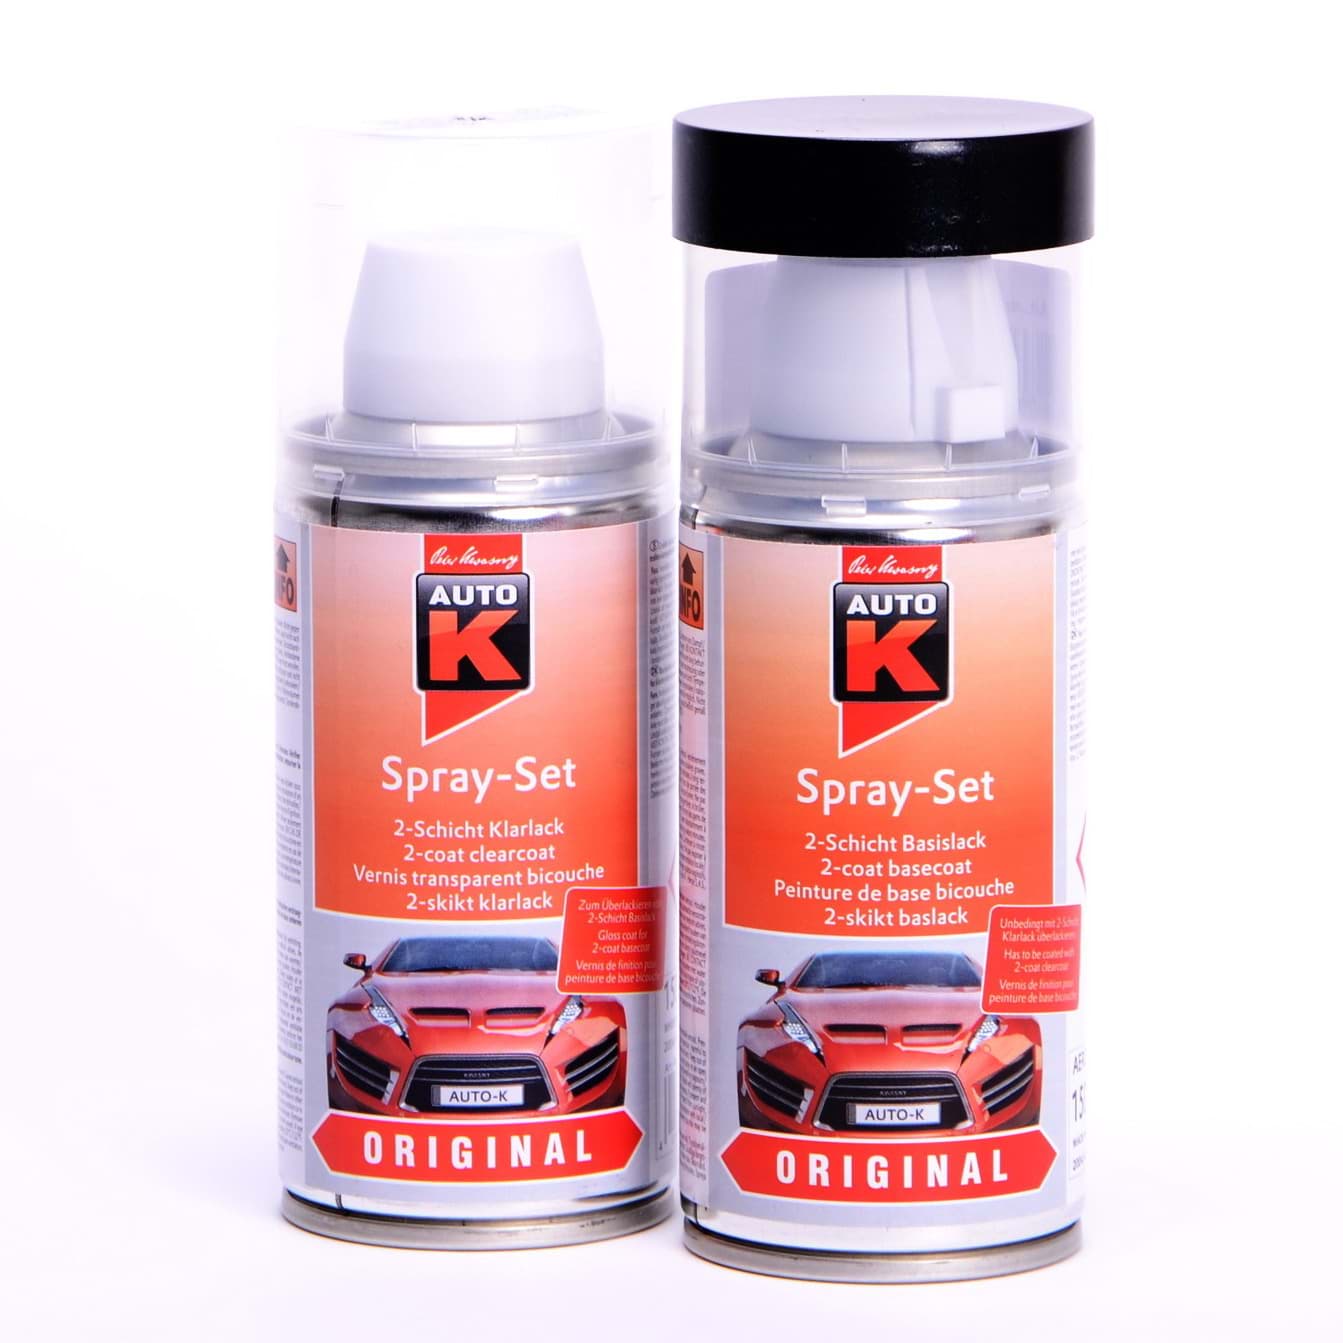 Auto-K Spray-Set Autolack für Volkswagen, VW, Audi LY7M Alusilber met 20799 resmi